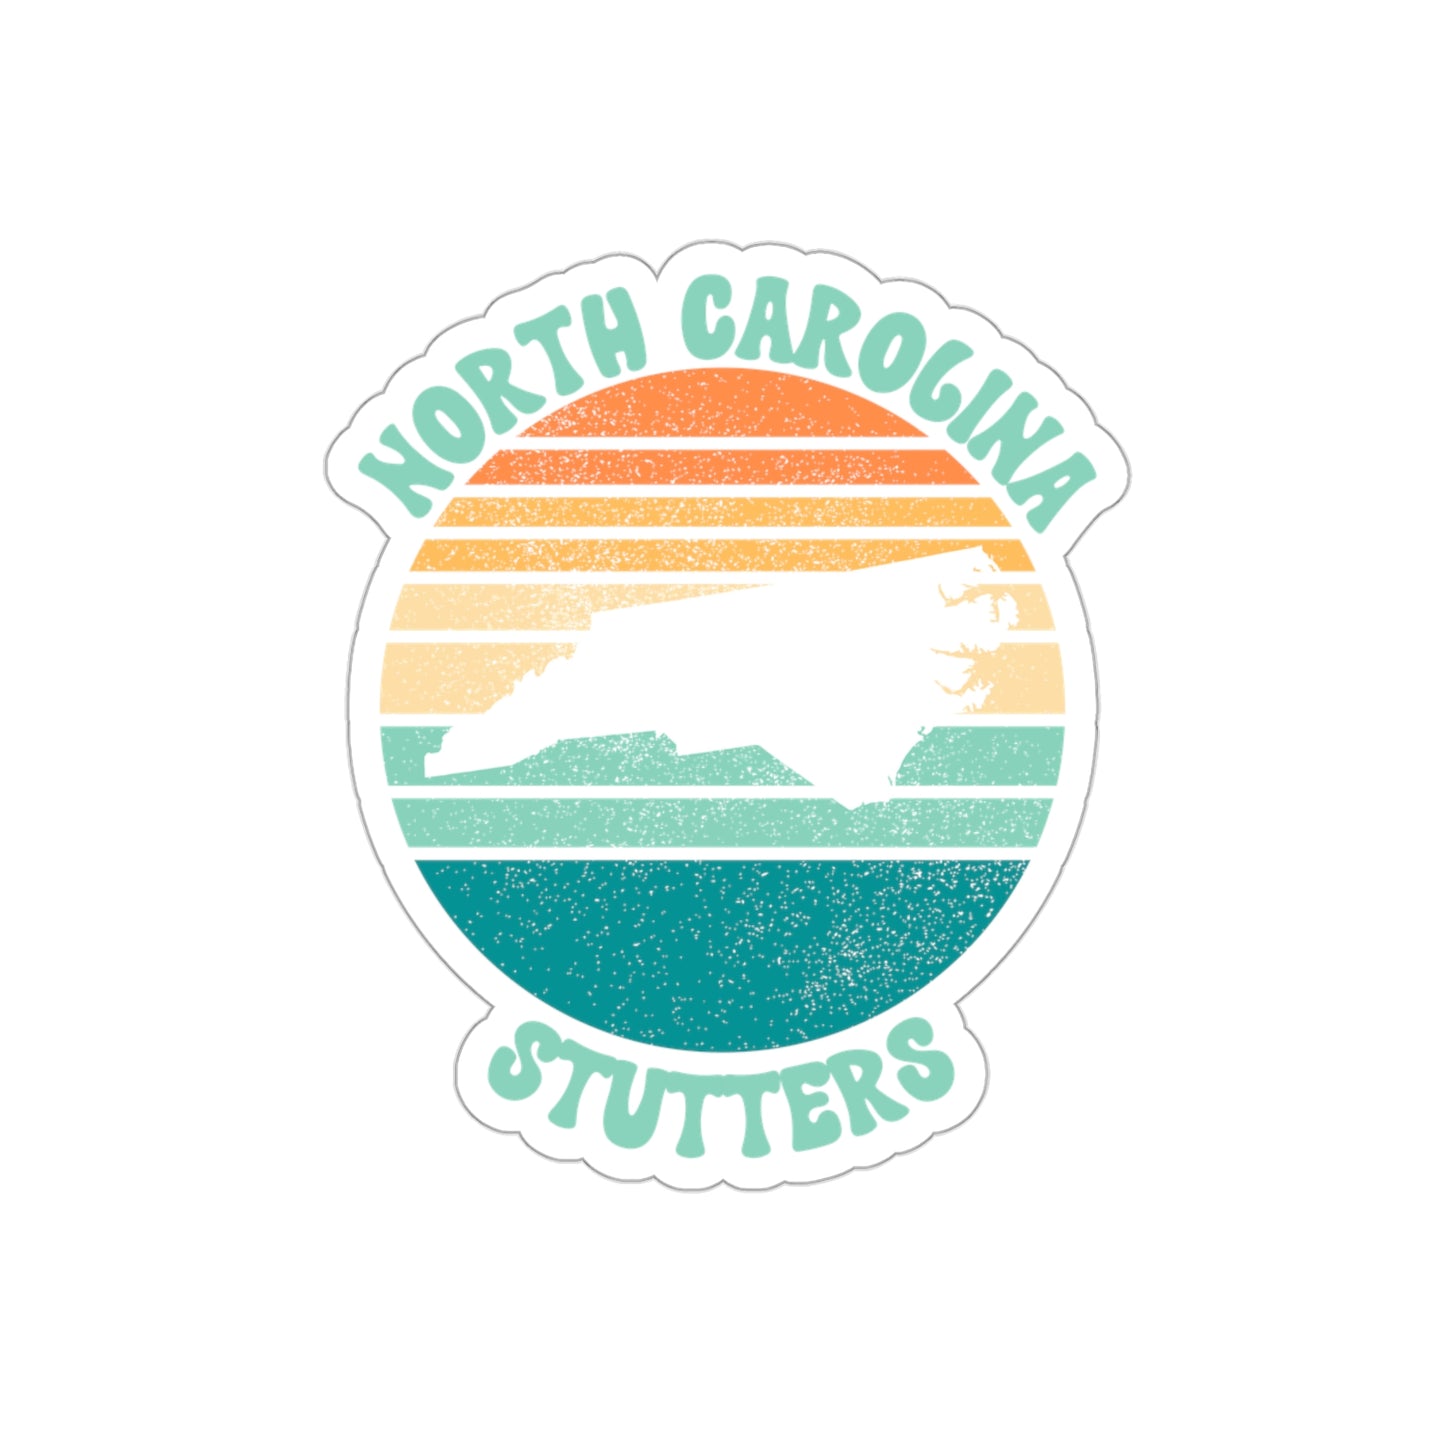 North Carolina Stutters Retro Sun Sticker, 3", 4", 5" or 6"